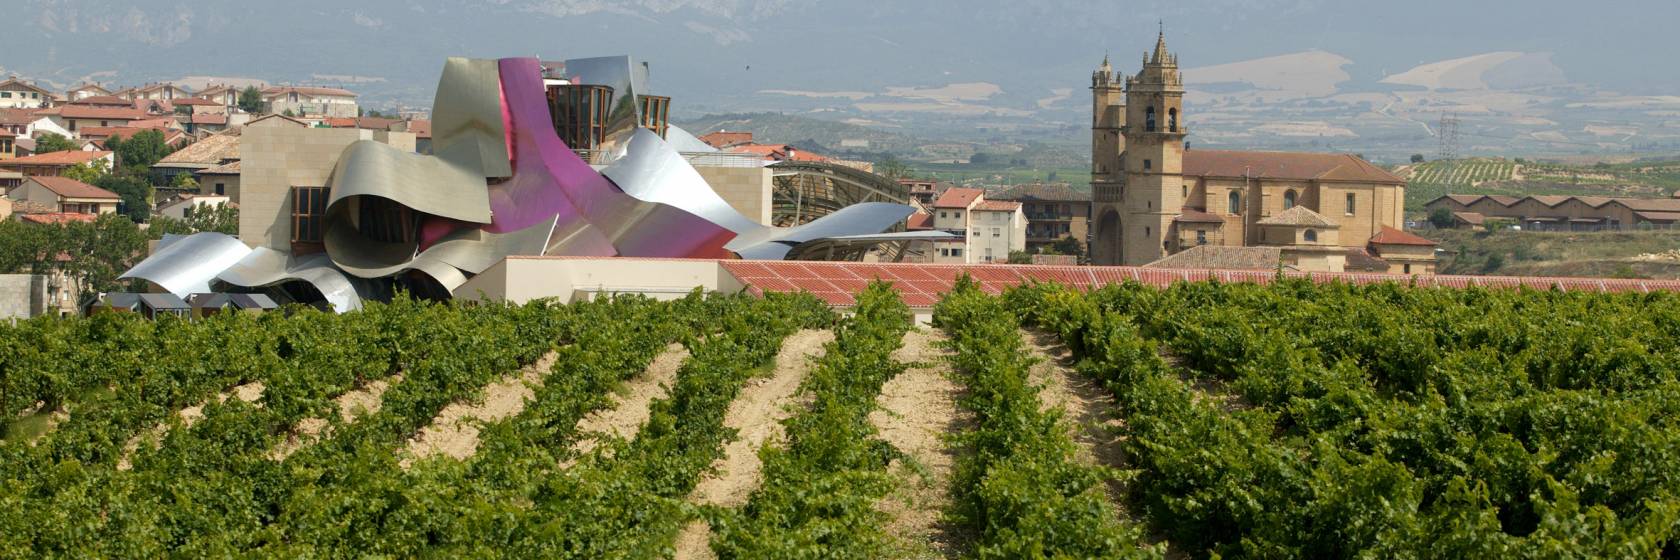 Conoce las 5 mejores rutas del vino españolas viajando en tren o AVE 1